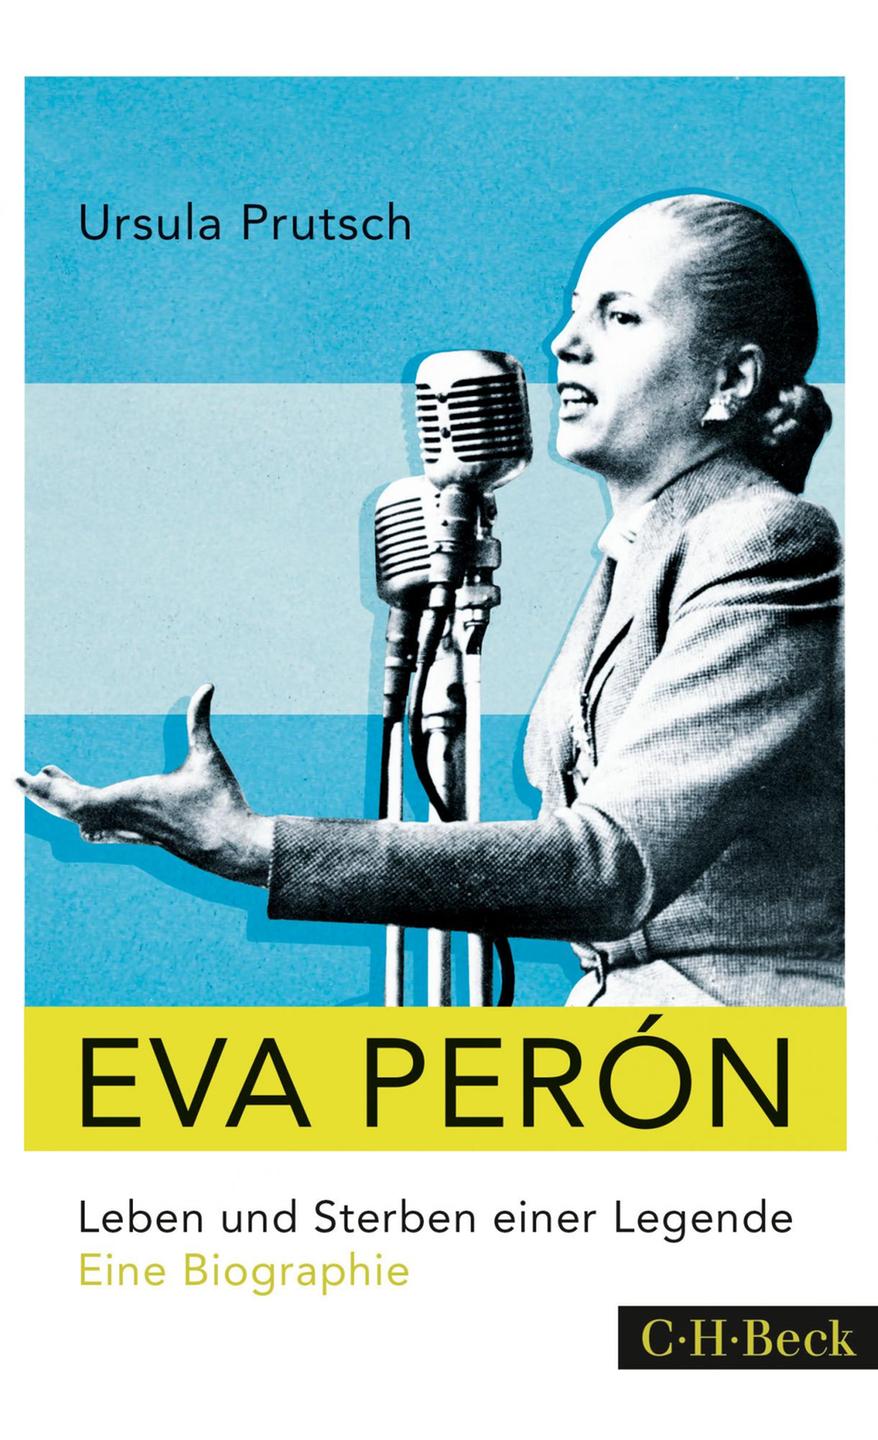 Cover - Ursula Prutsch: "Eva Perón. Leben und Sterben einer Legende. Eine Biographie"